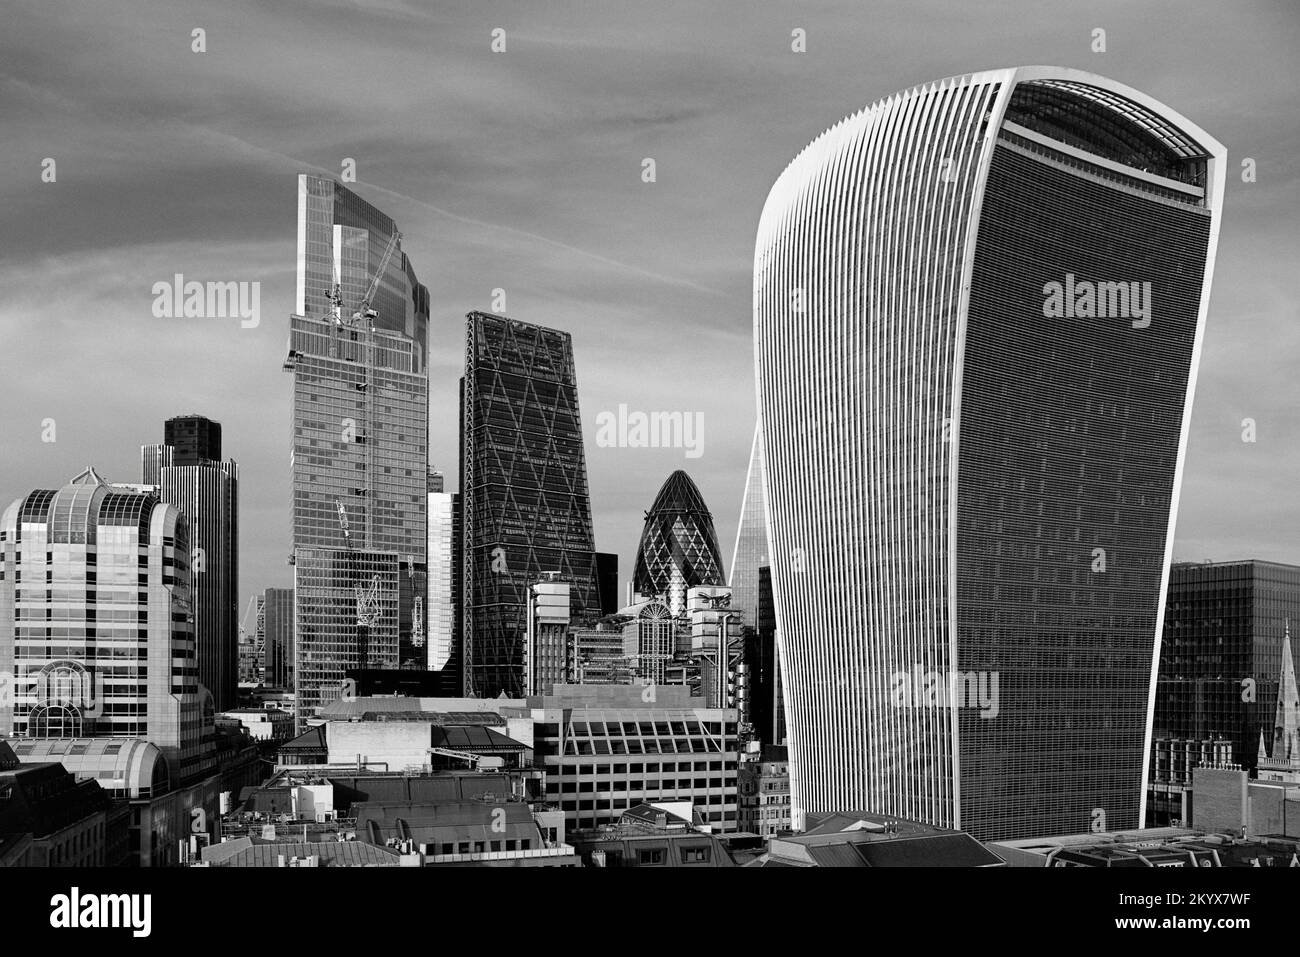 Vue sur la ville de Londres depuis le Monument, avec la Tour Talkie Walkie, le Leadenhall Building, le Gherkin et la Tour NatWest. Banque D'Images